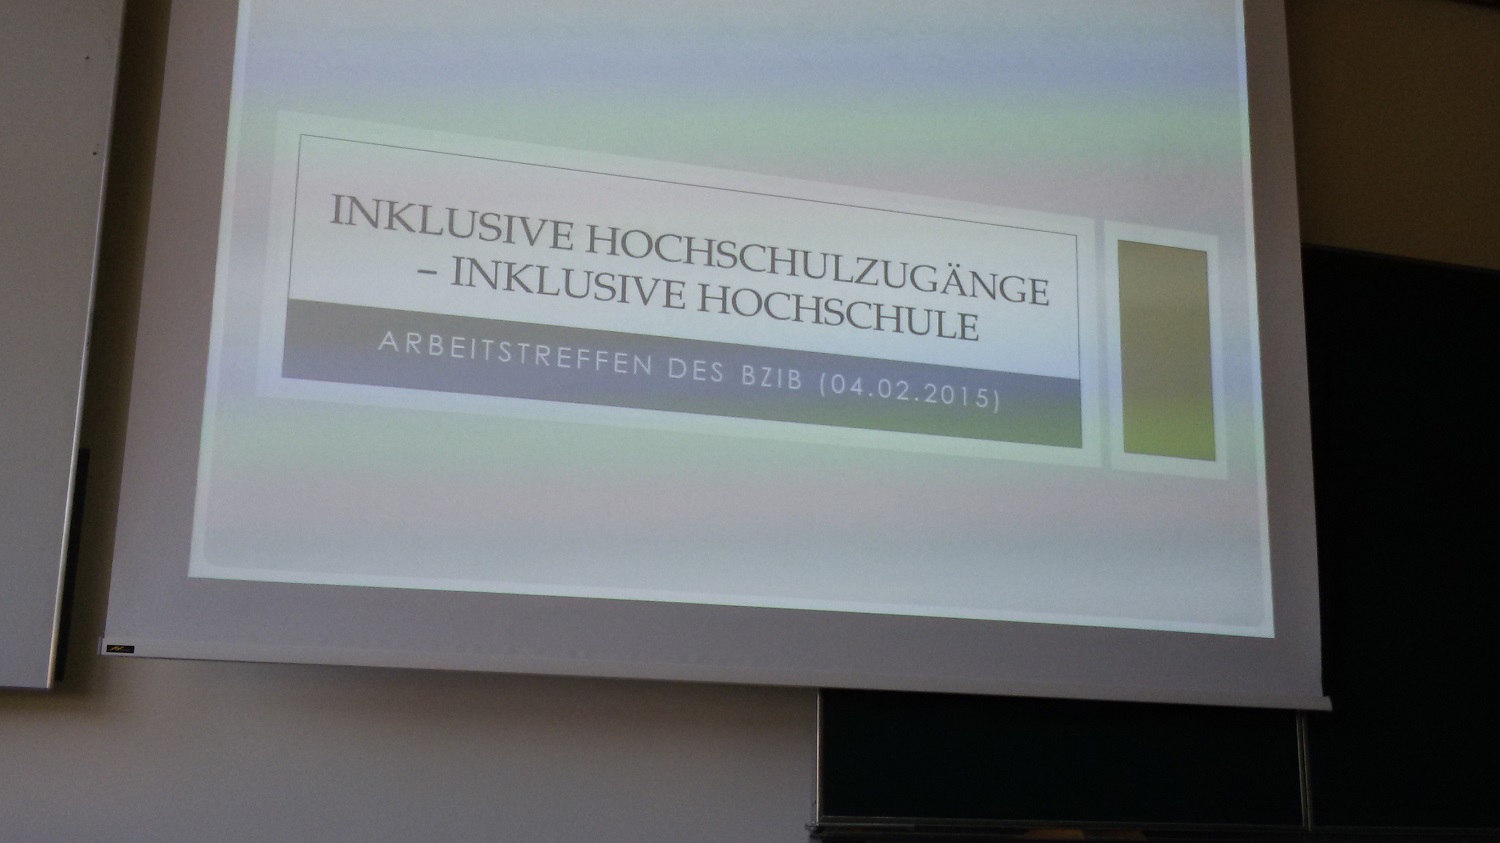 Inklusive Hochschulzugänge - Inklusive Hochschule ©Wien Work / Bundessache